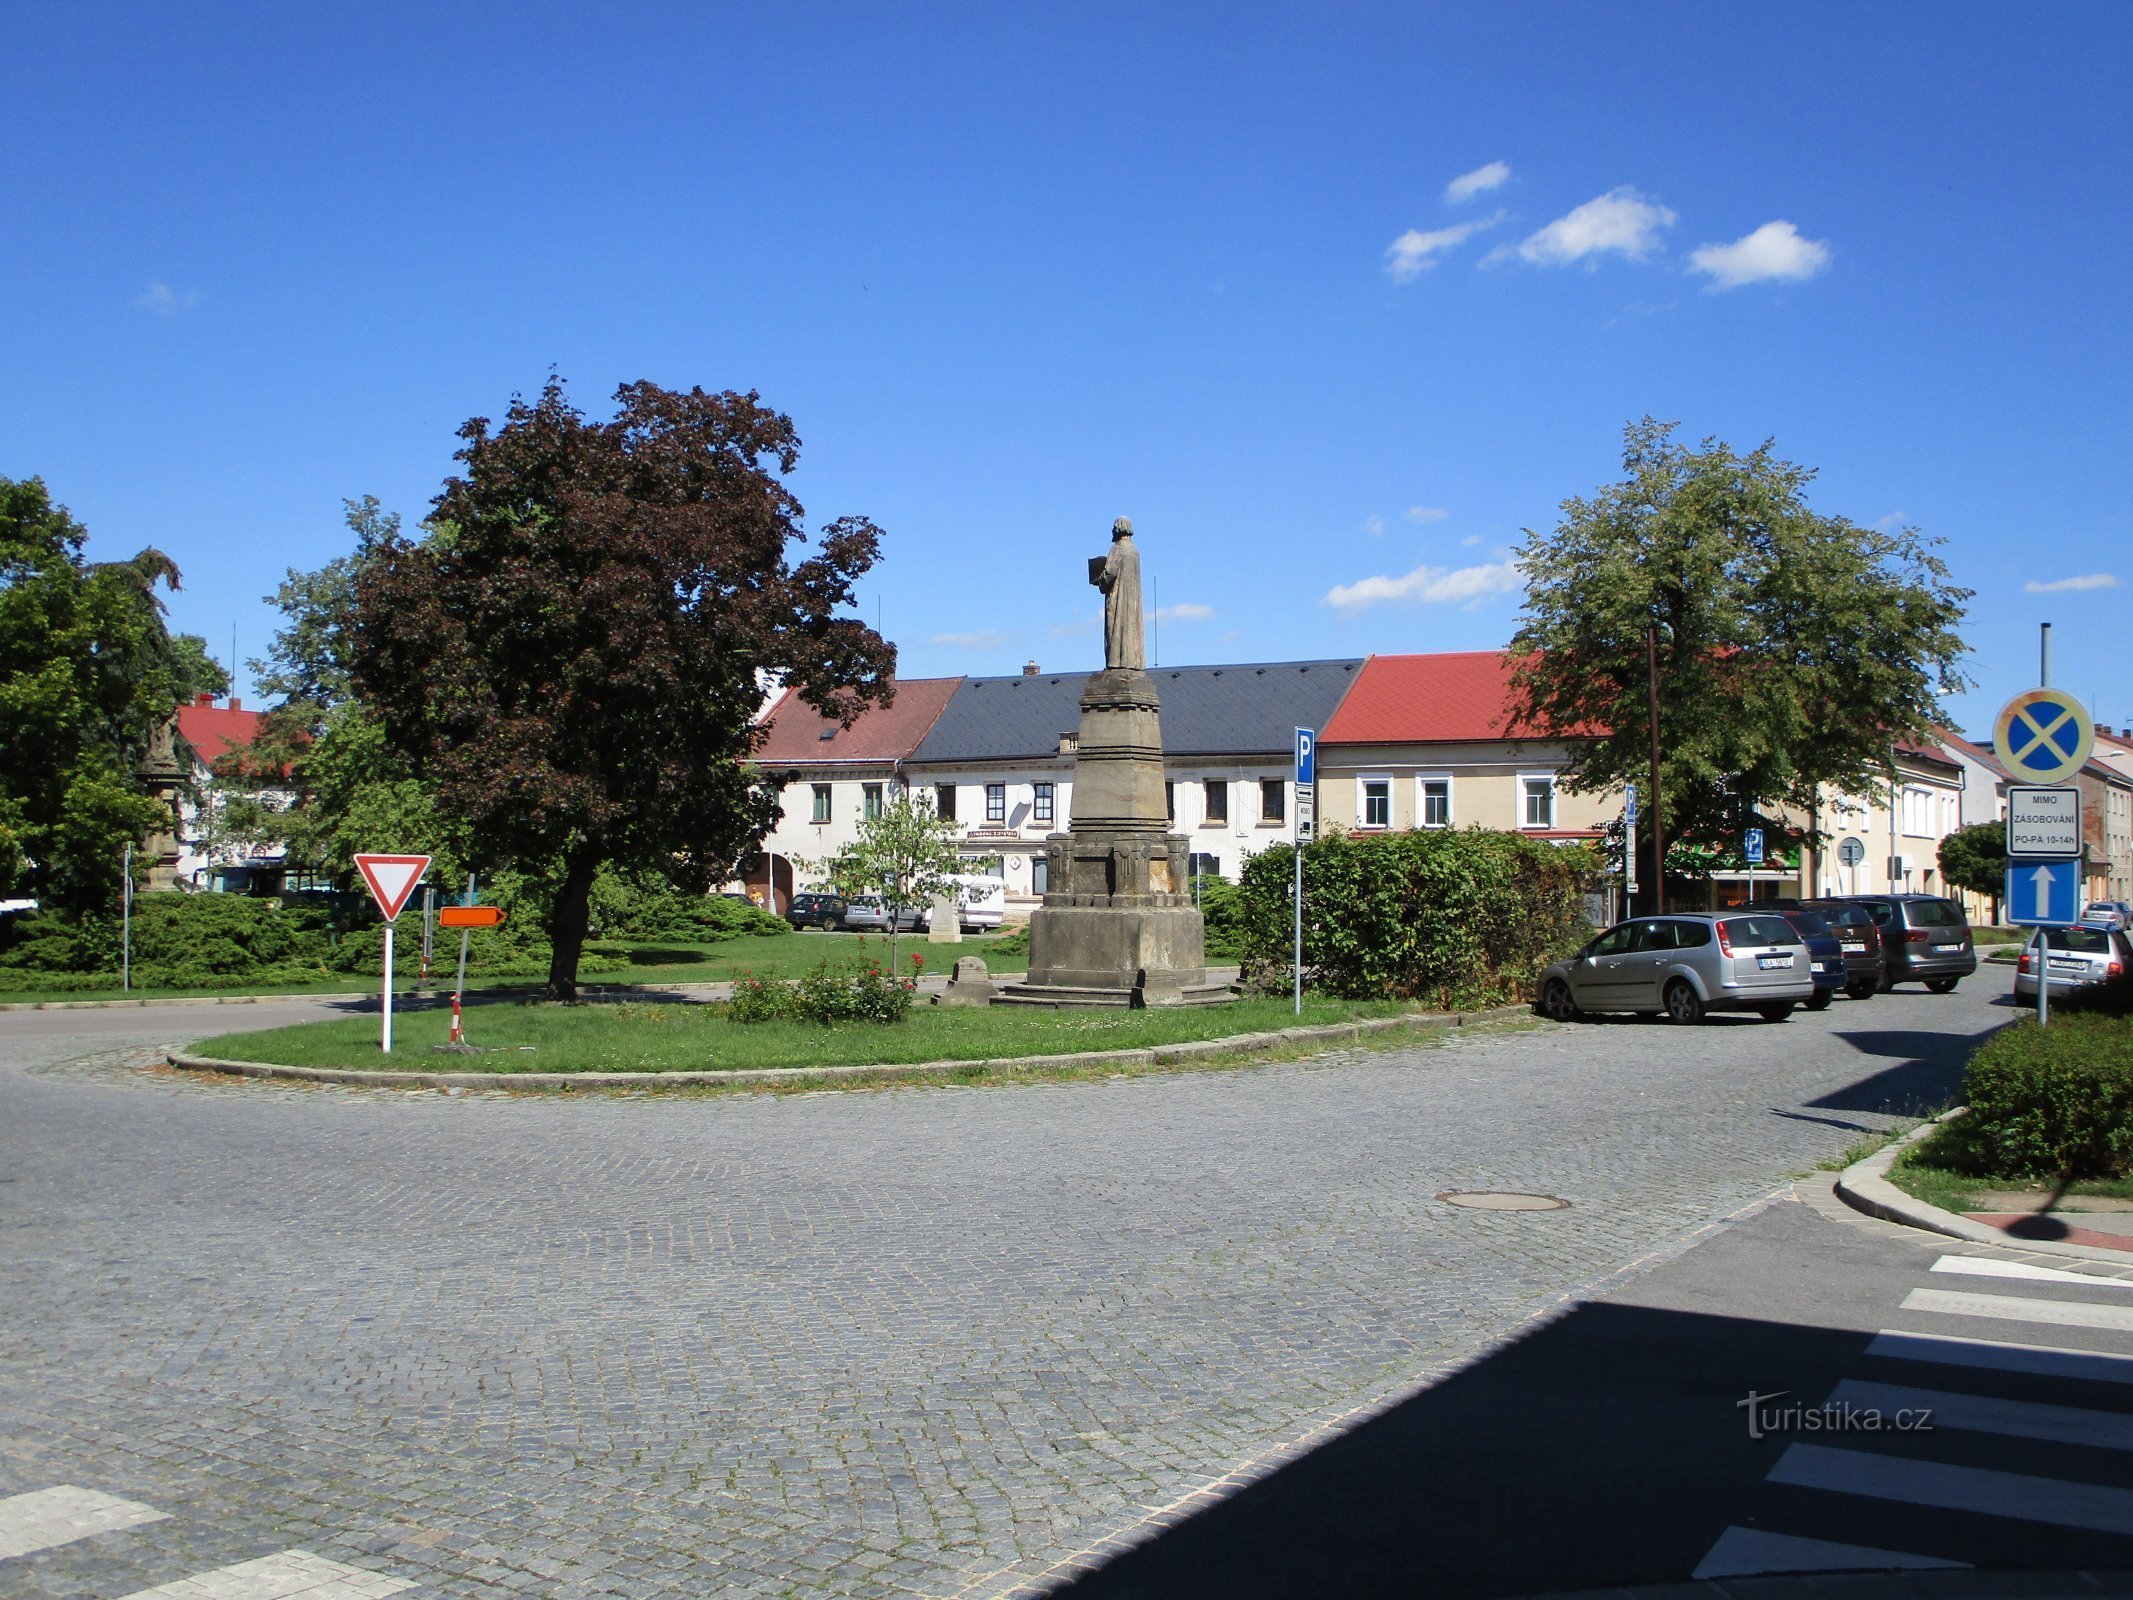 Place Hus avec le monument à M. Jan Hus (Nechanice, 18.8.2019/XNUMX/XNUMX)